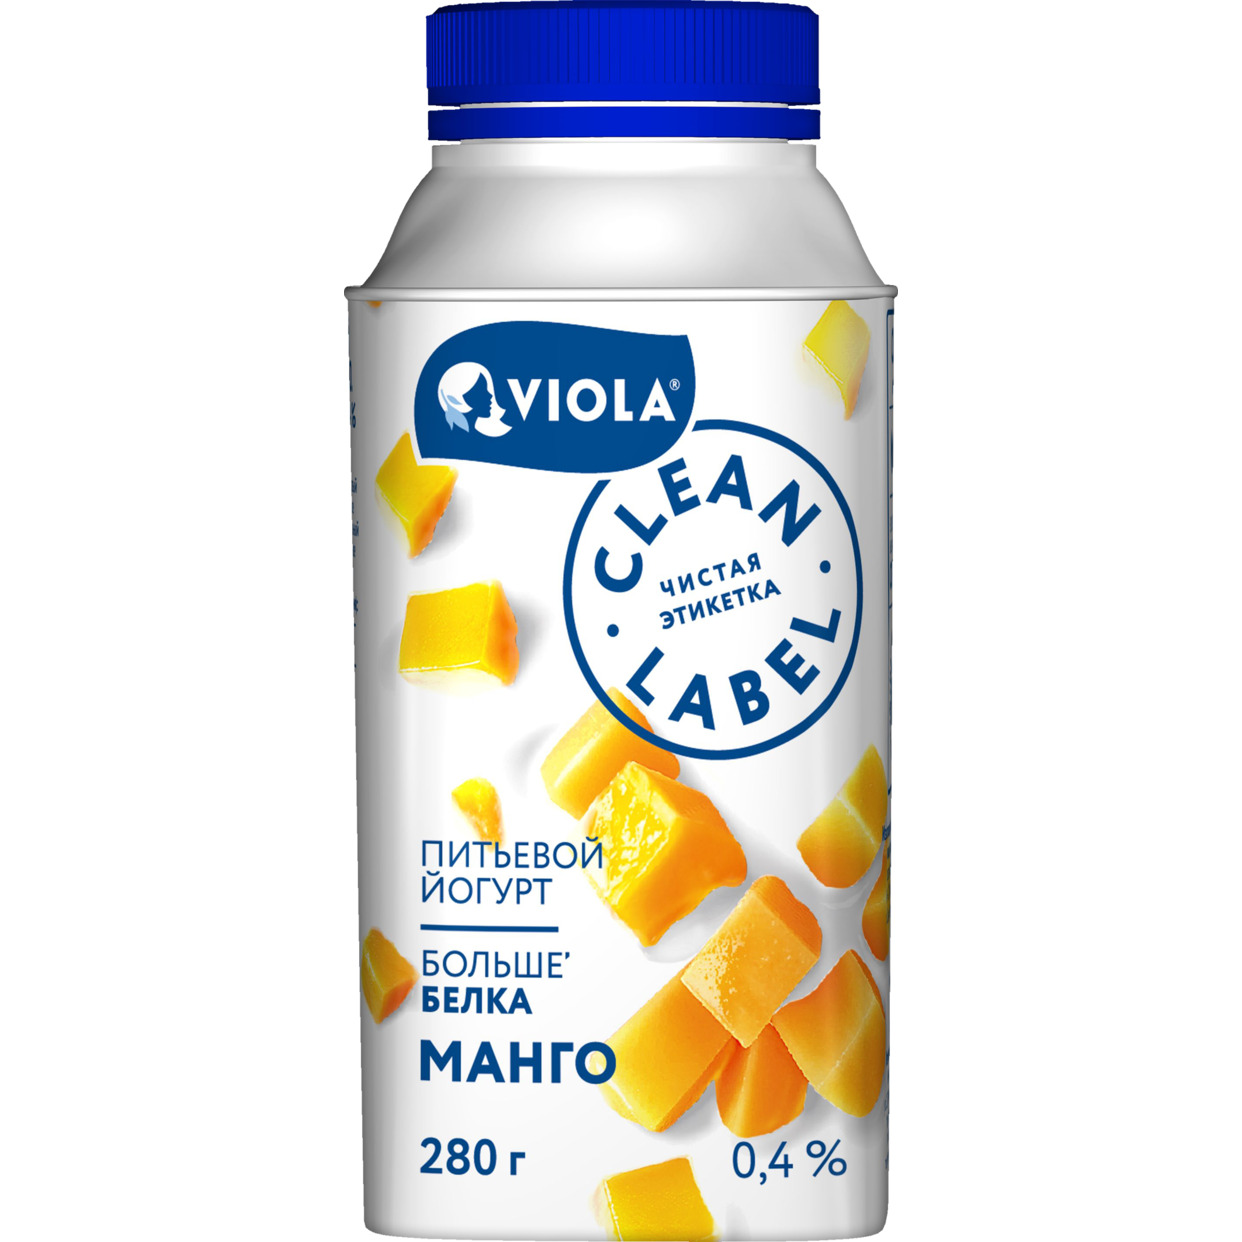 БЗМЖ Йогурт питьевой Clean Label с манго Массовая доля жира 0,4% 280г по акции в Пятерочке